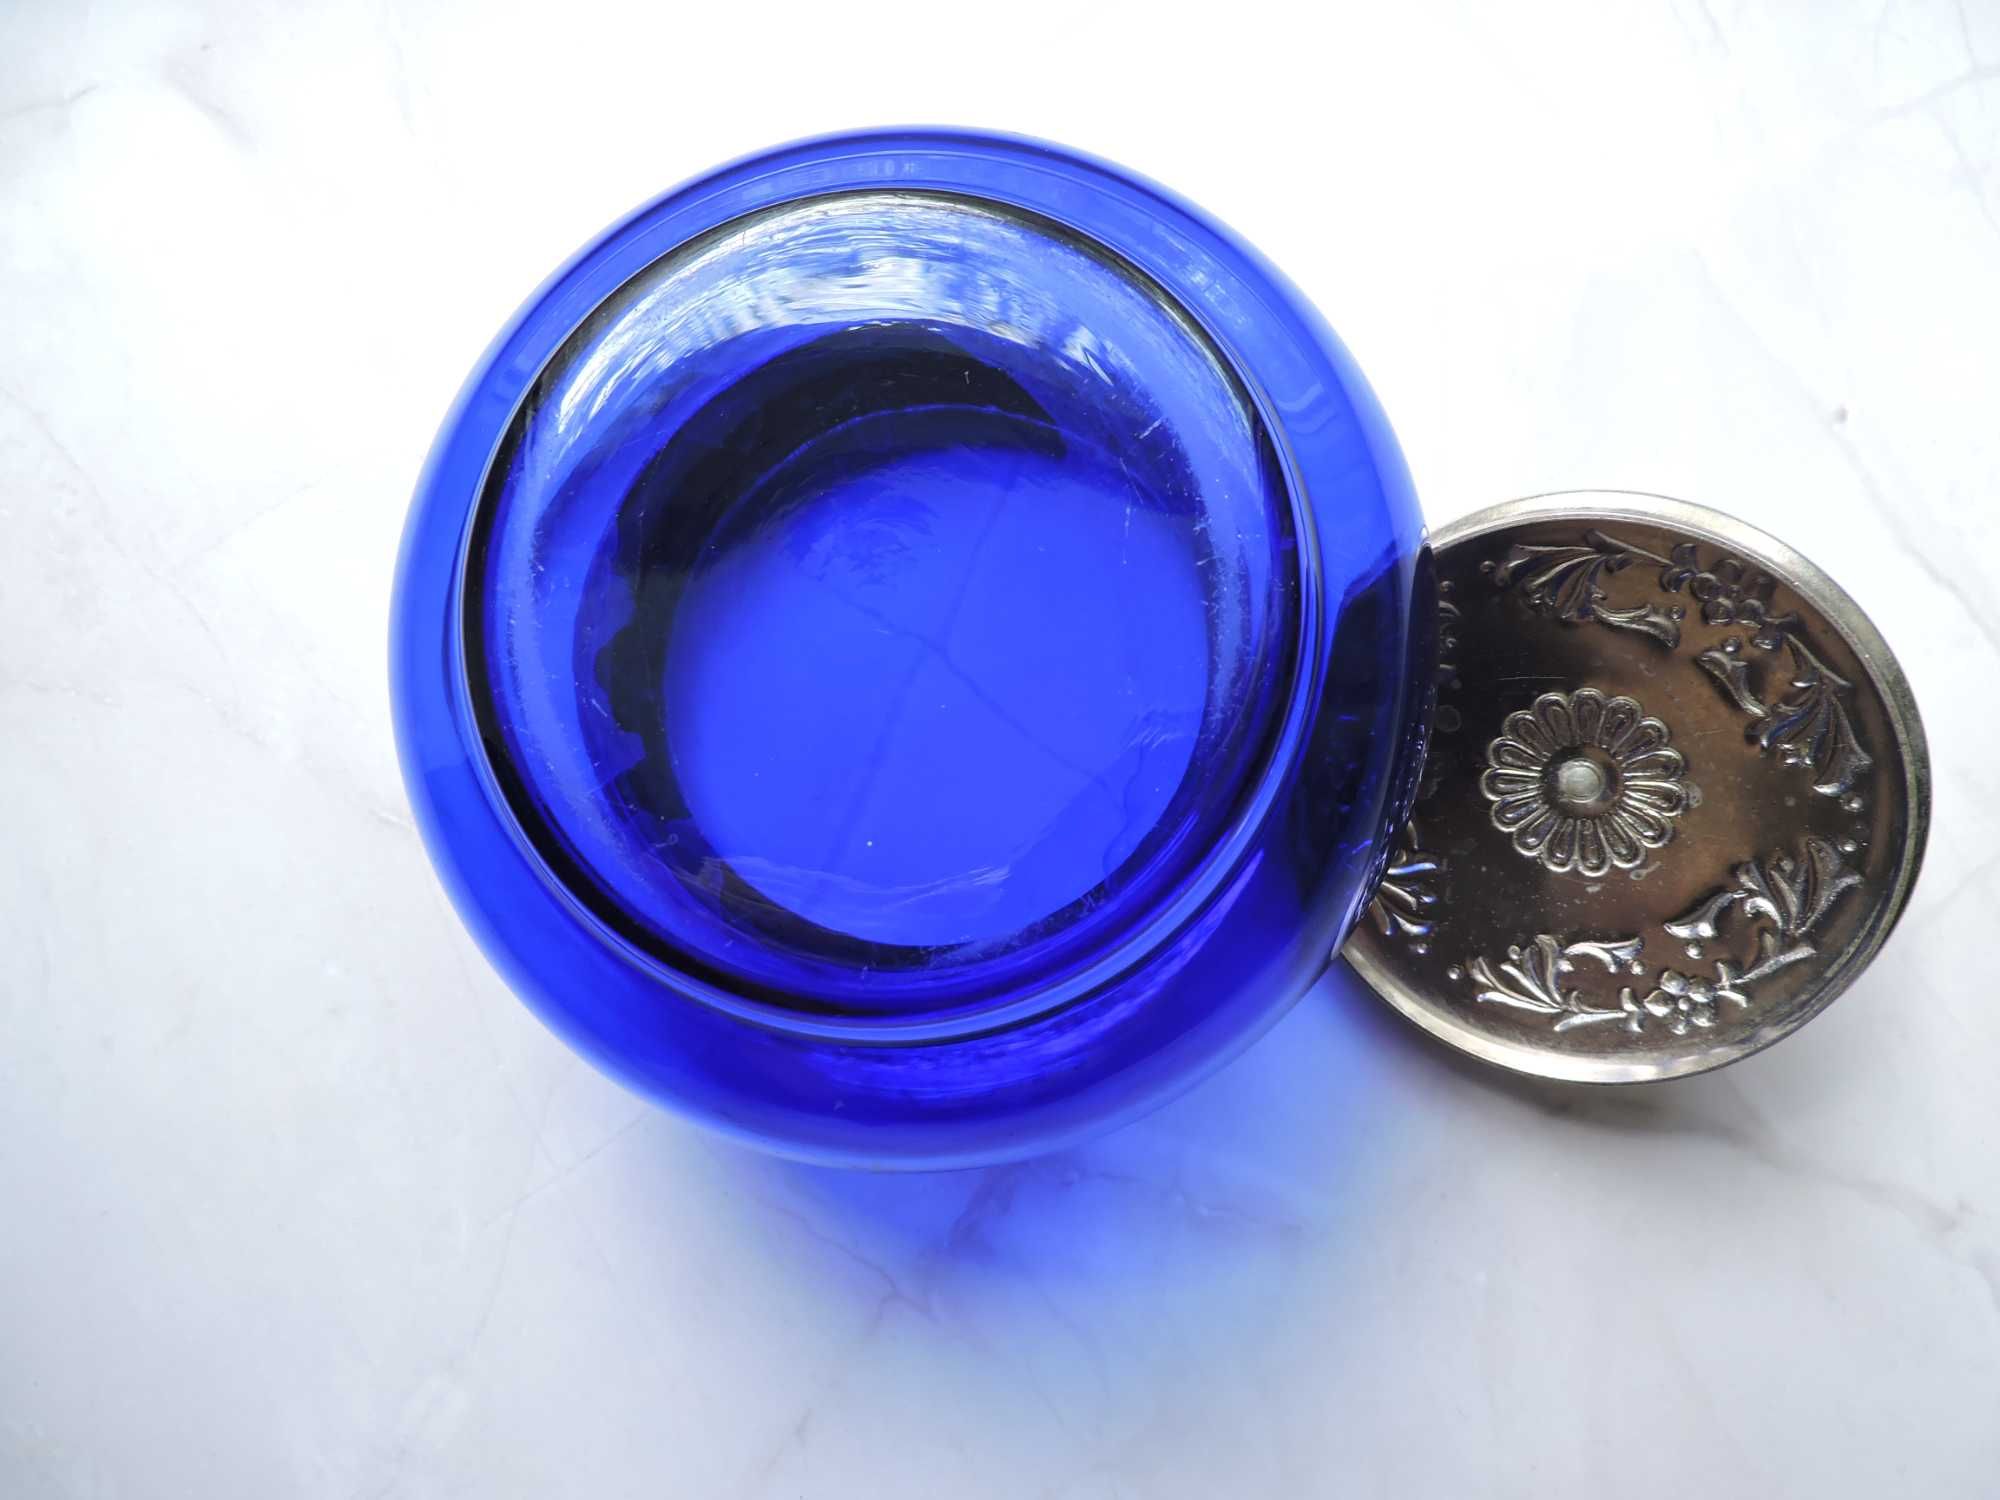 Сахарница синее стекло кобальт мельхиор клеймо ЗИШ МНЦ СССР